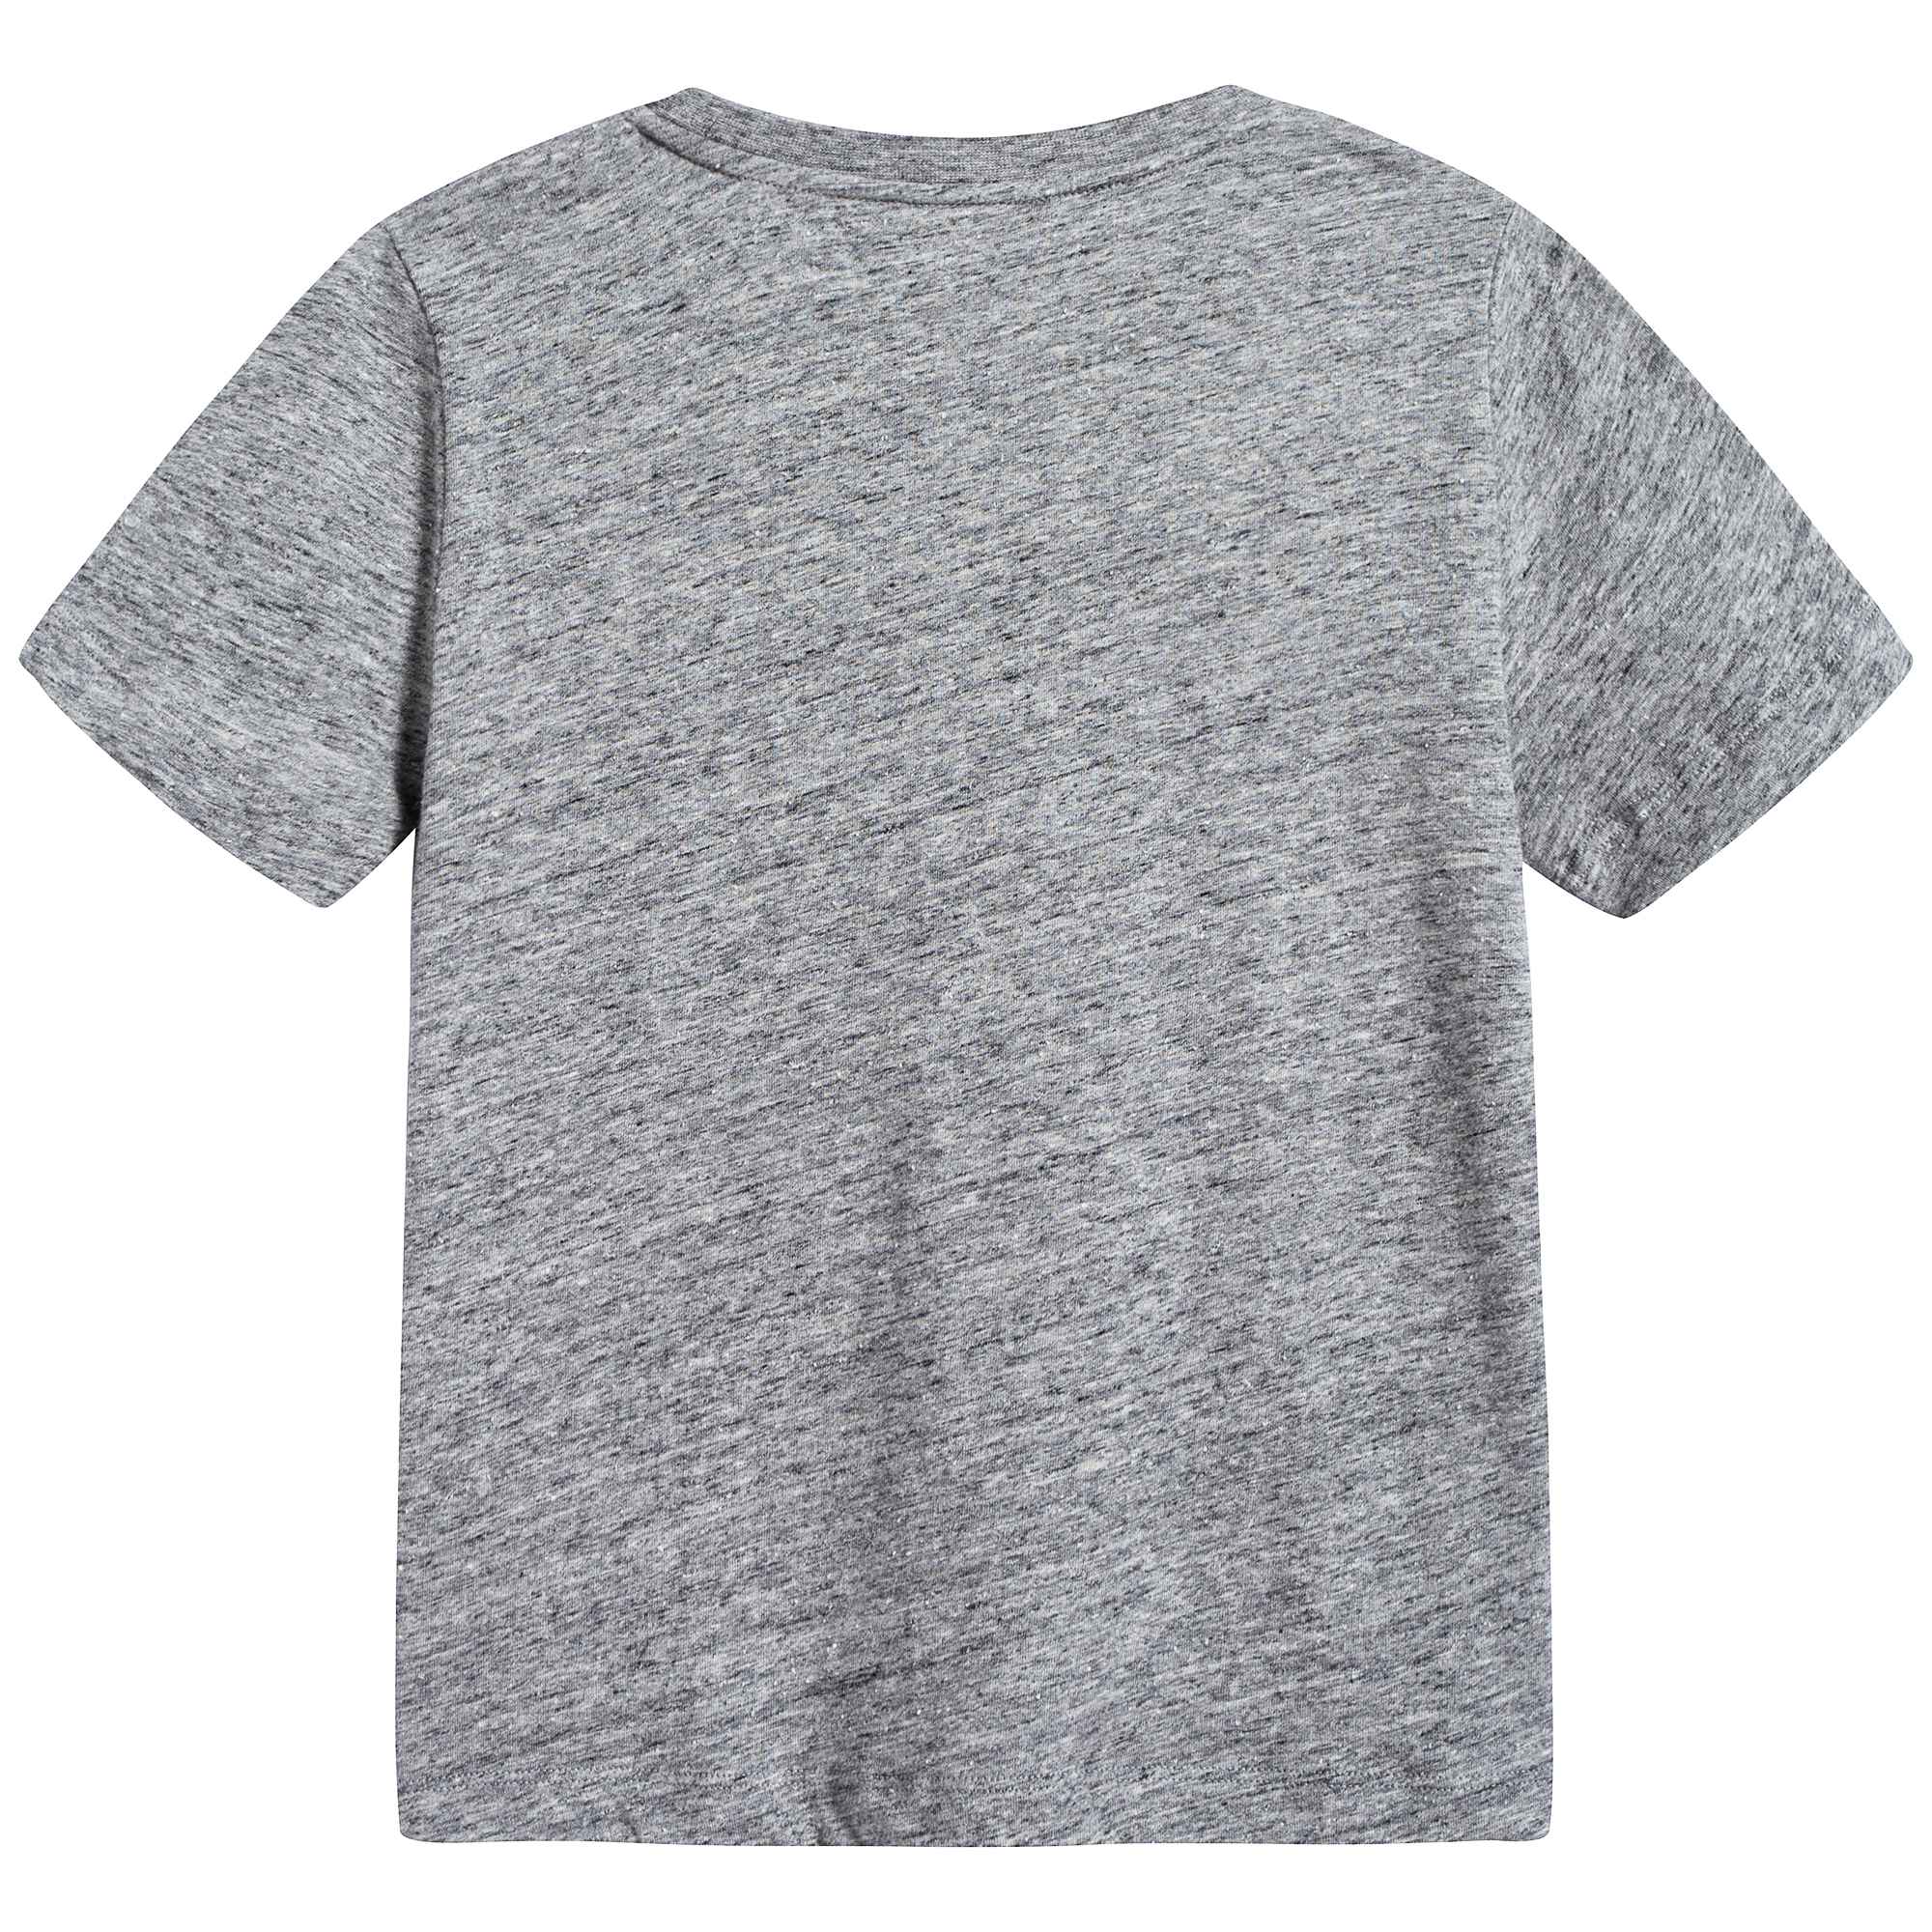 Girls Grey Melange Cotton T-shirt